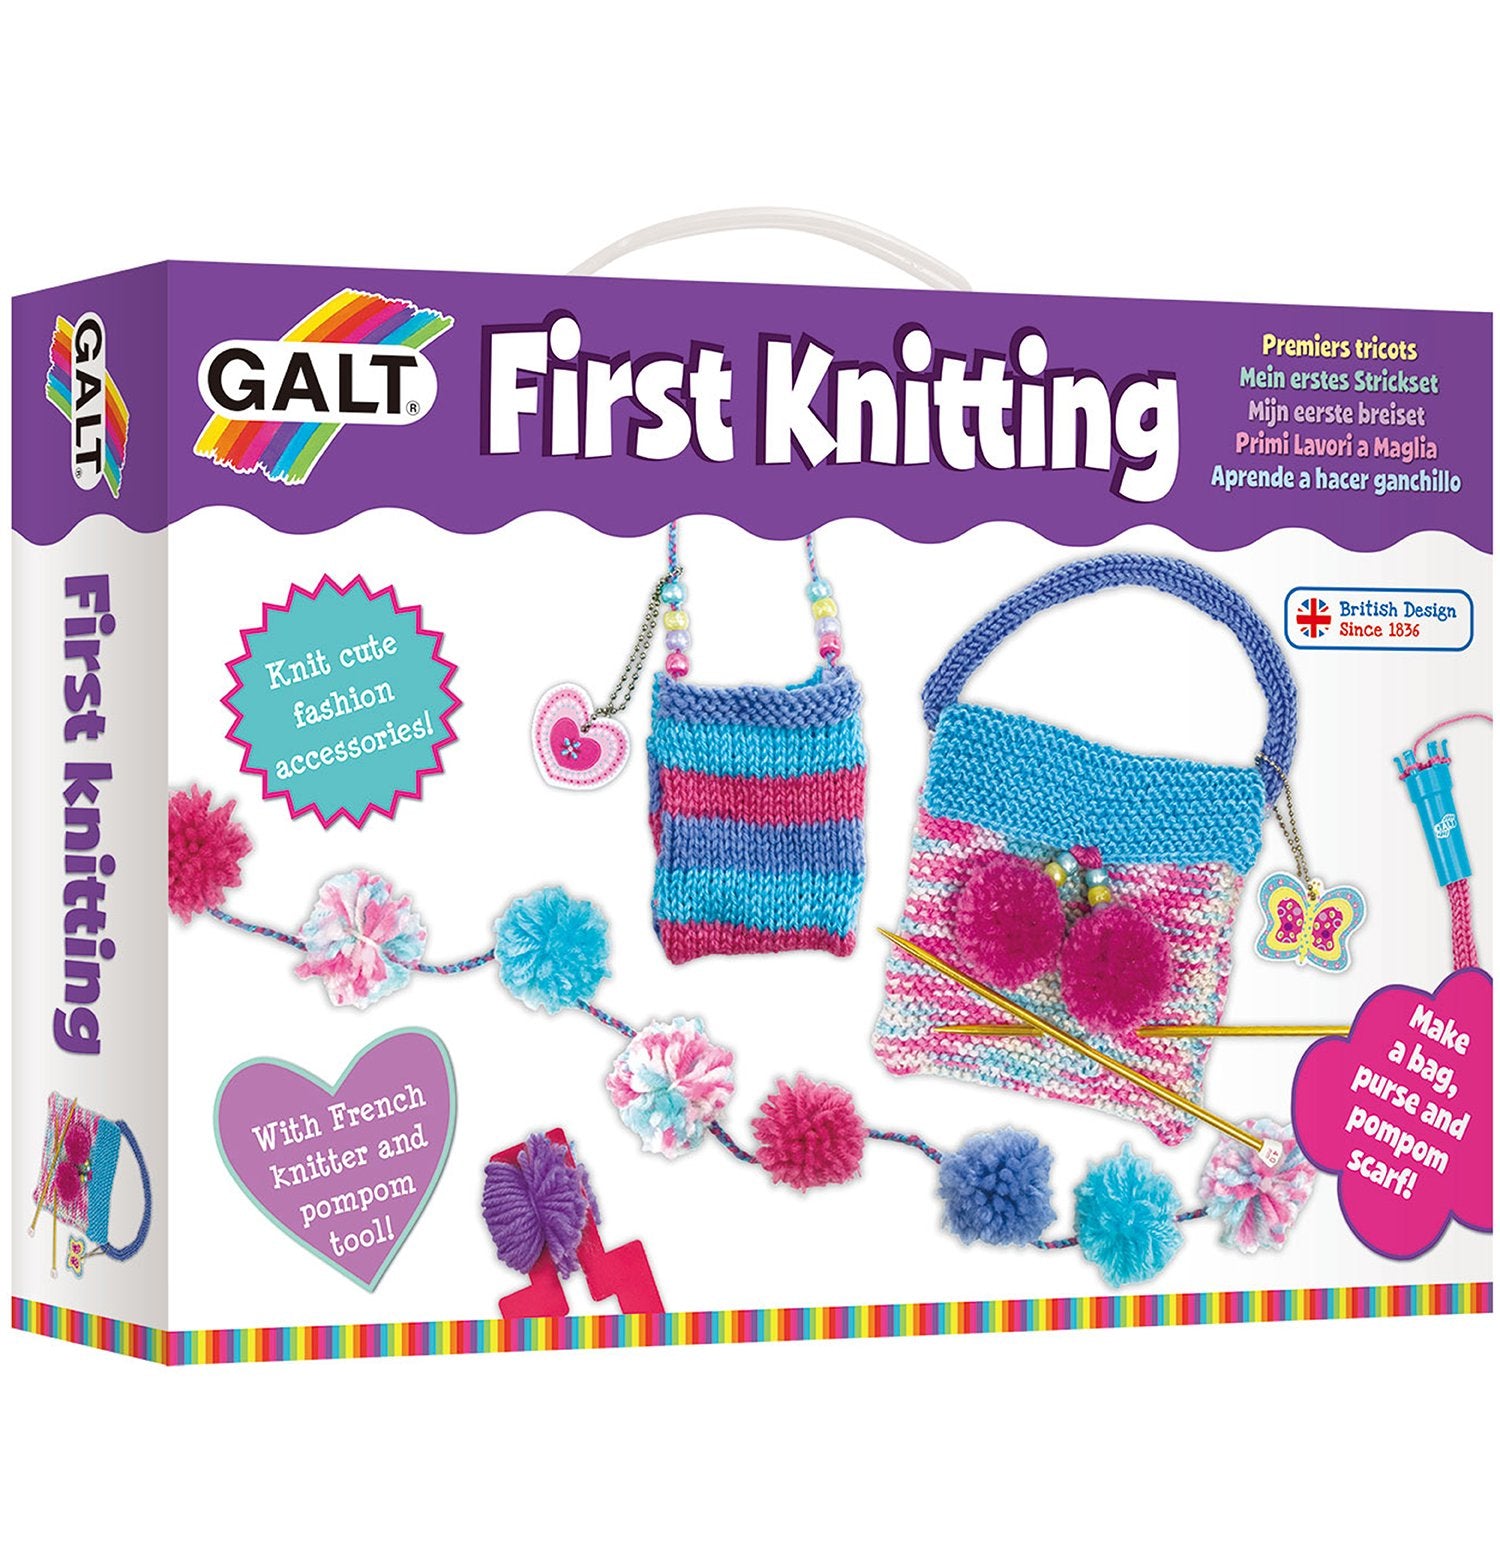 First Knitting - Galt